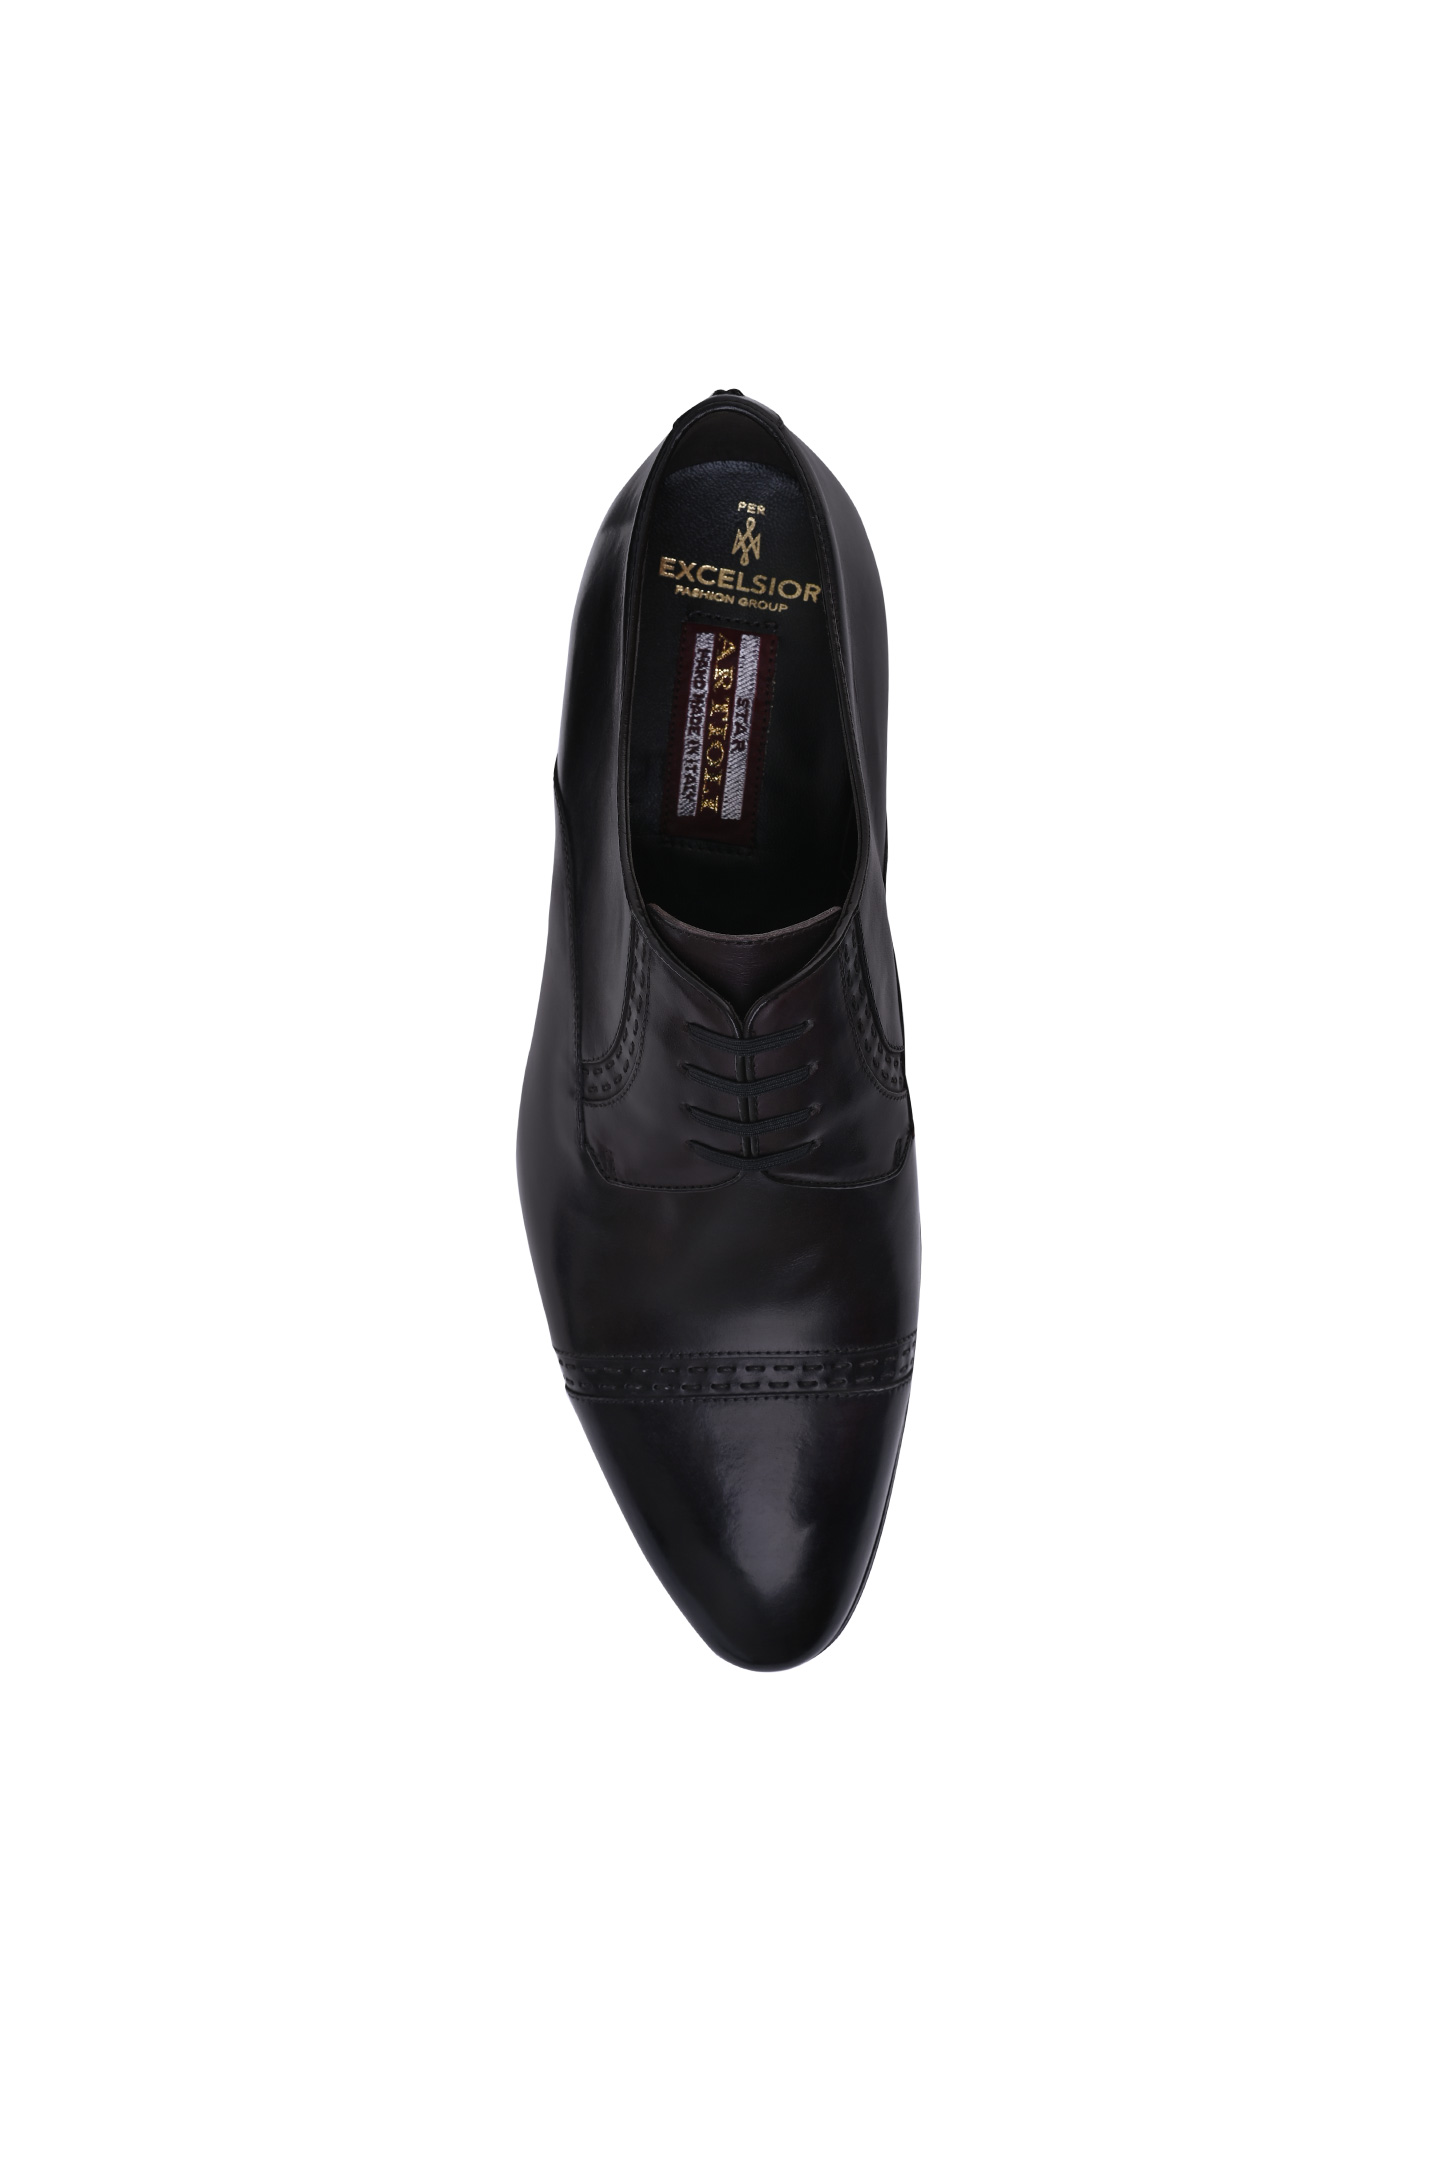 Туфли ARTIOLI 0G6S488, цвет: Темно-коричневый, Мужской